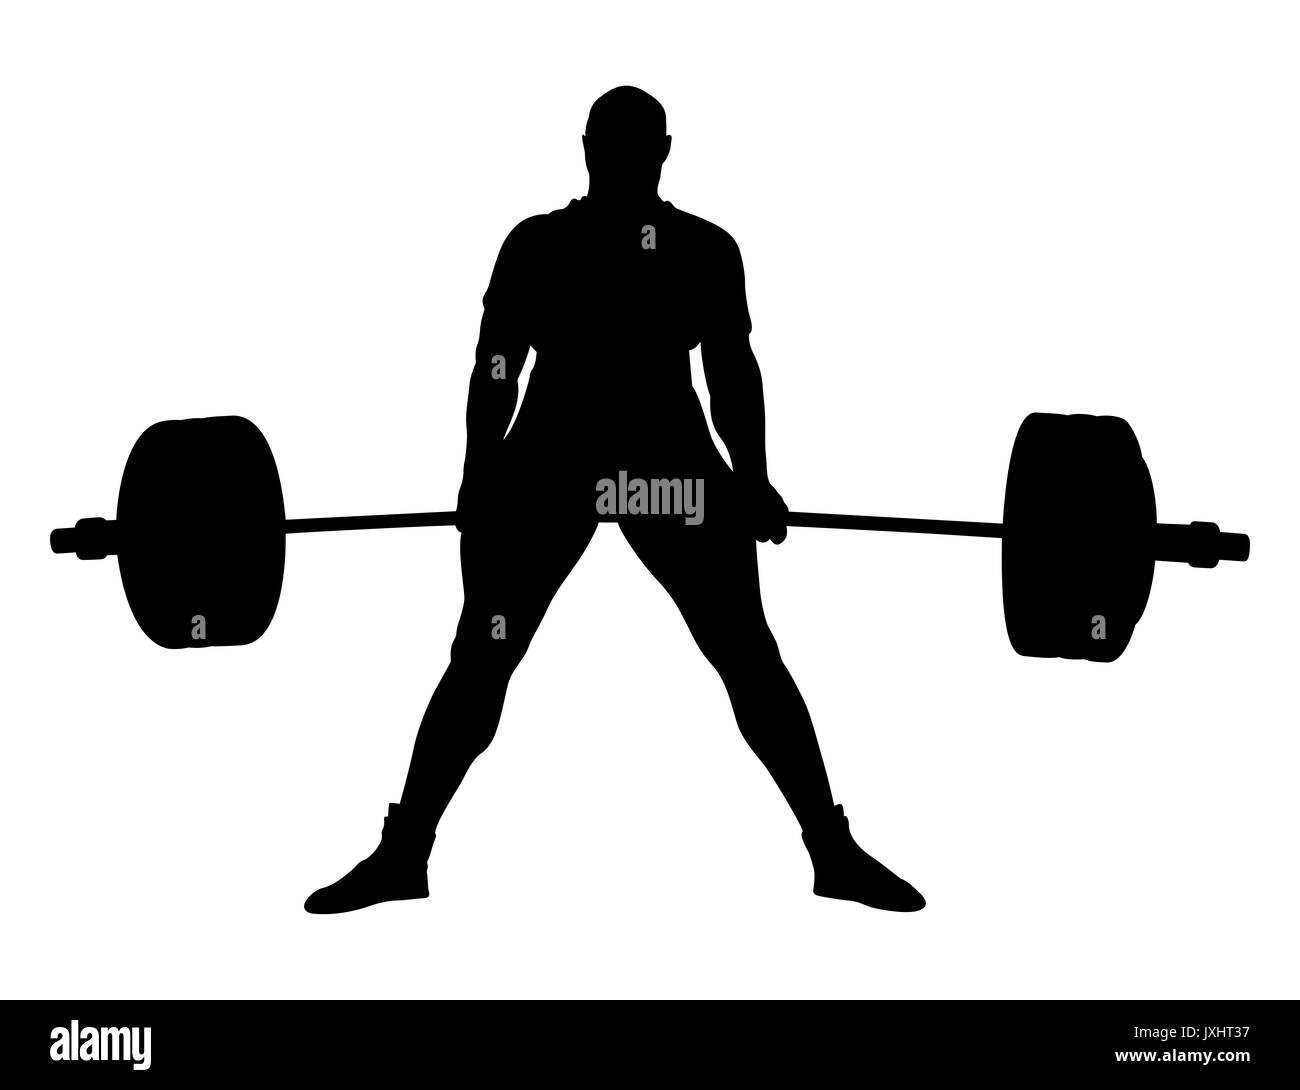 male powerlifter exercise deadlift black silhouette Stock Photo